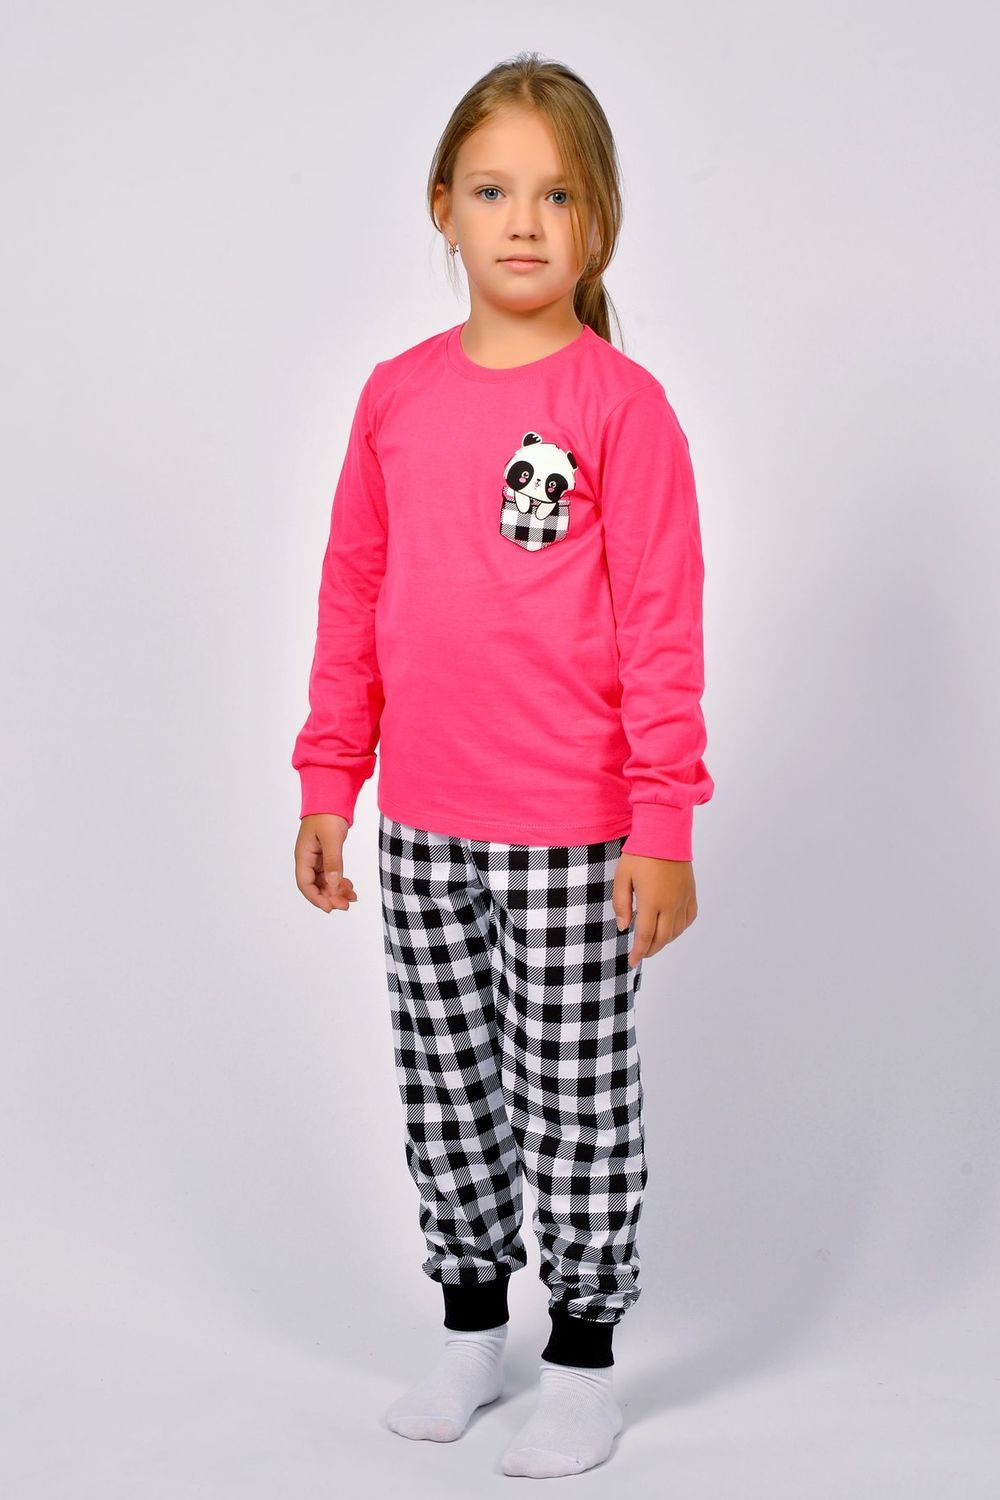 Пижама для девочки 91220 - ярко-розовый/черная клетка